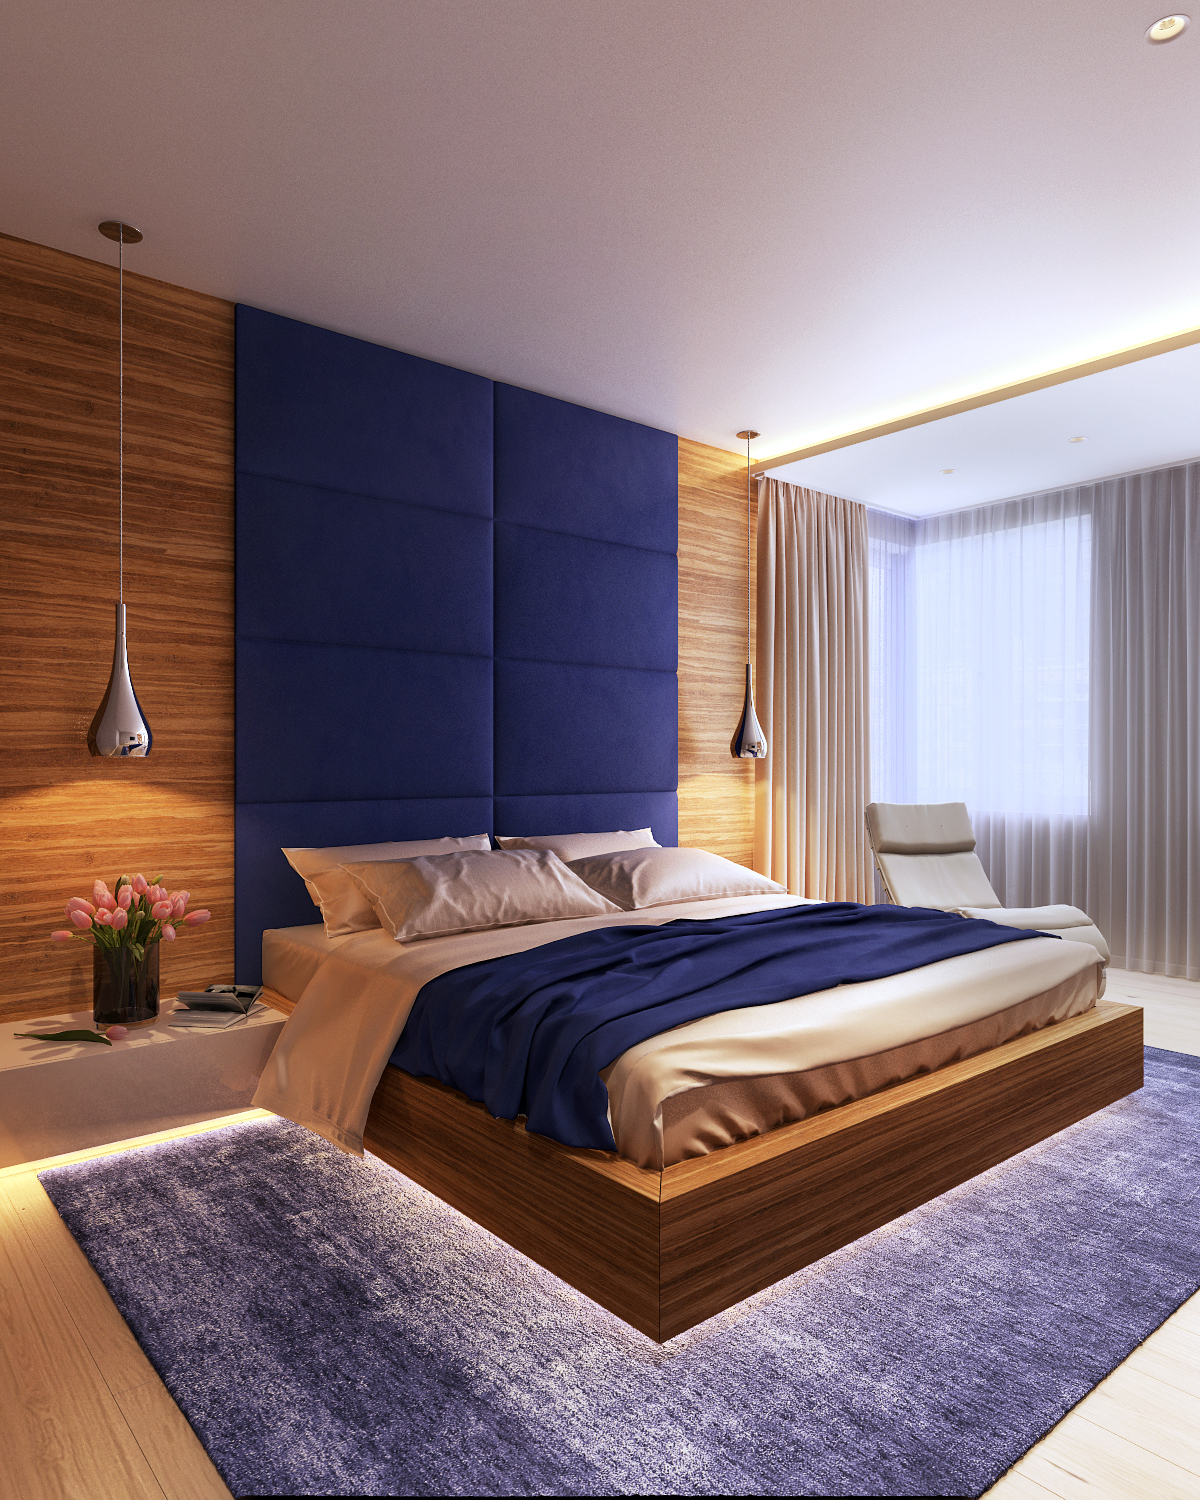 modern interior wood apartment Render viz vizualisztion 3drender